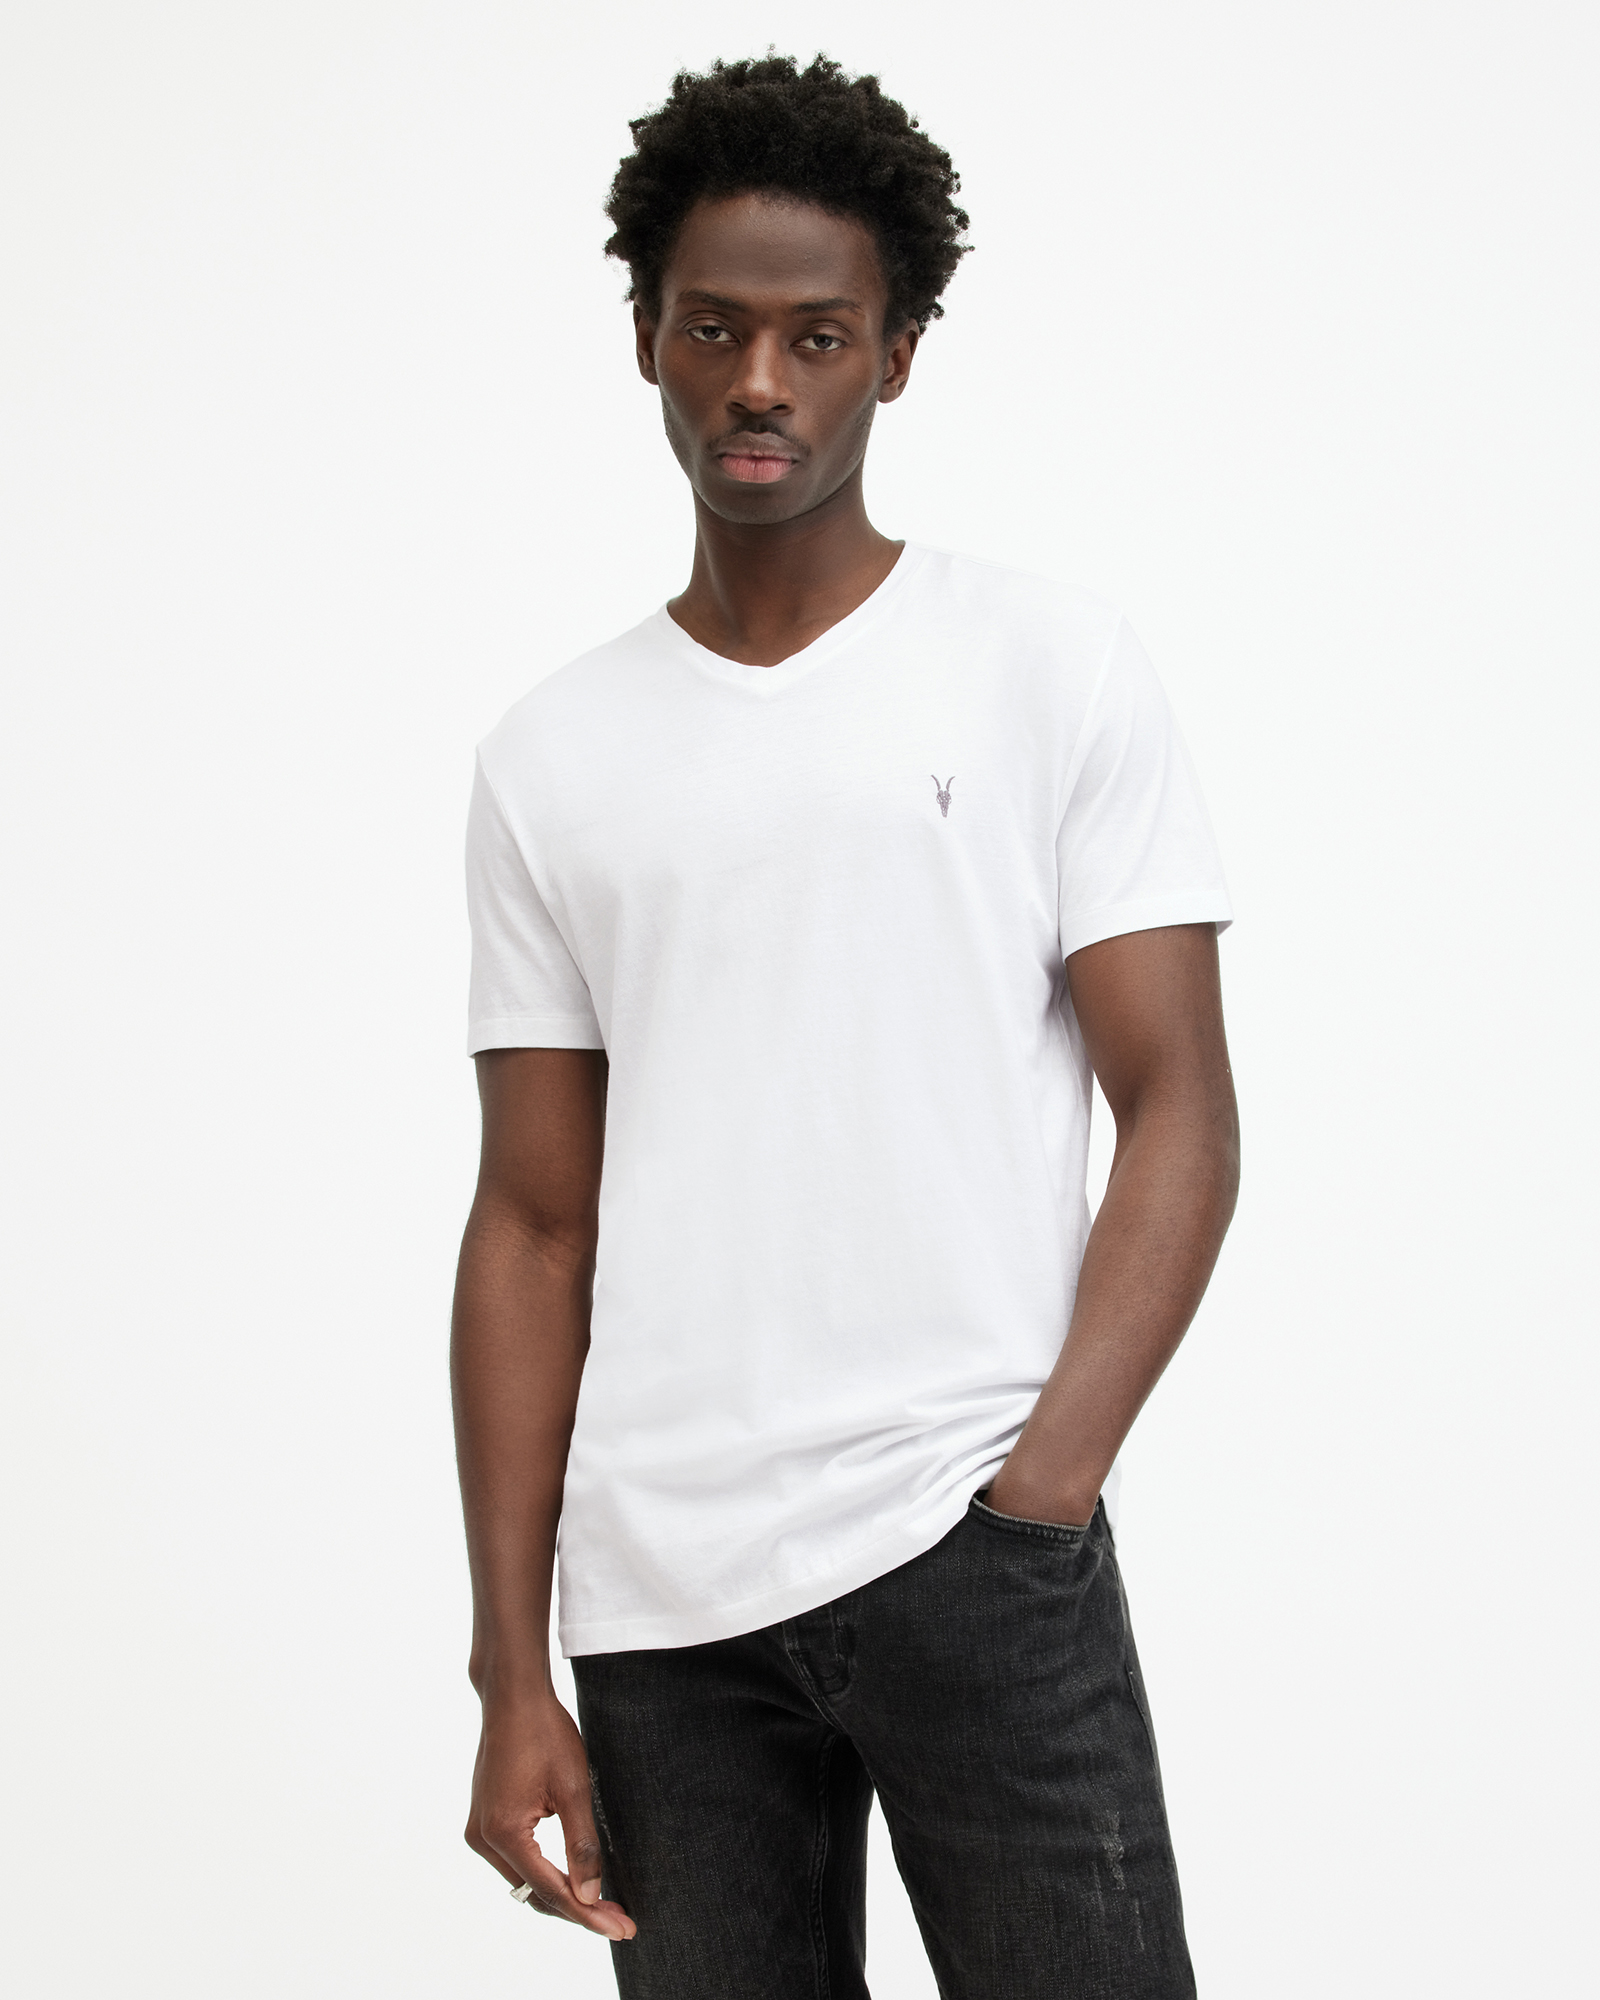 AllSaints Tonic V-Neck Slim Fit Ramskull T-Shirt,, Optic White